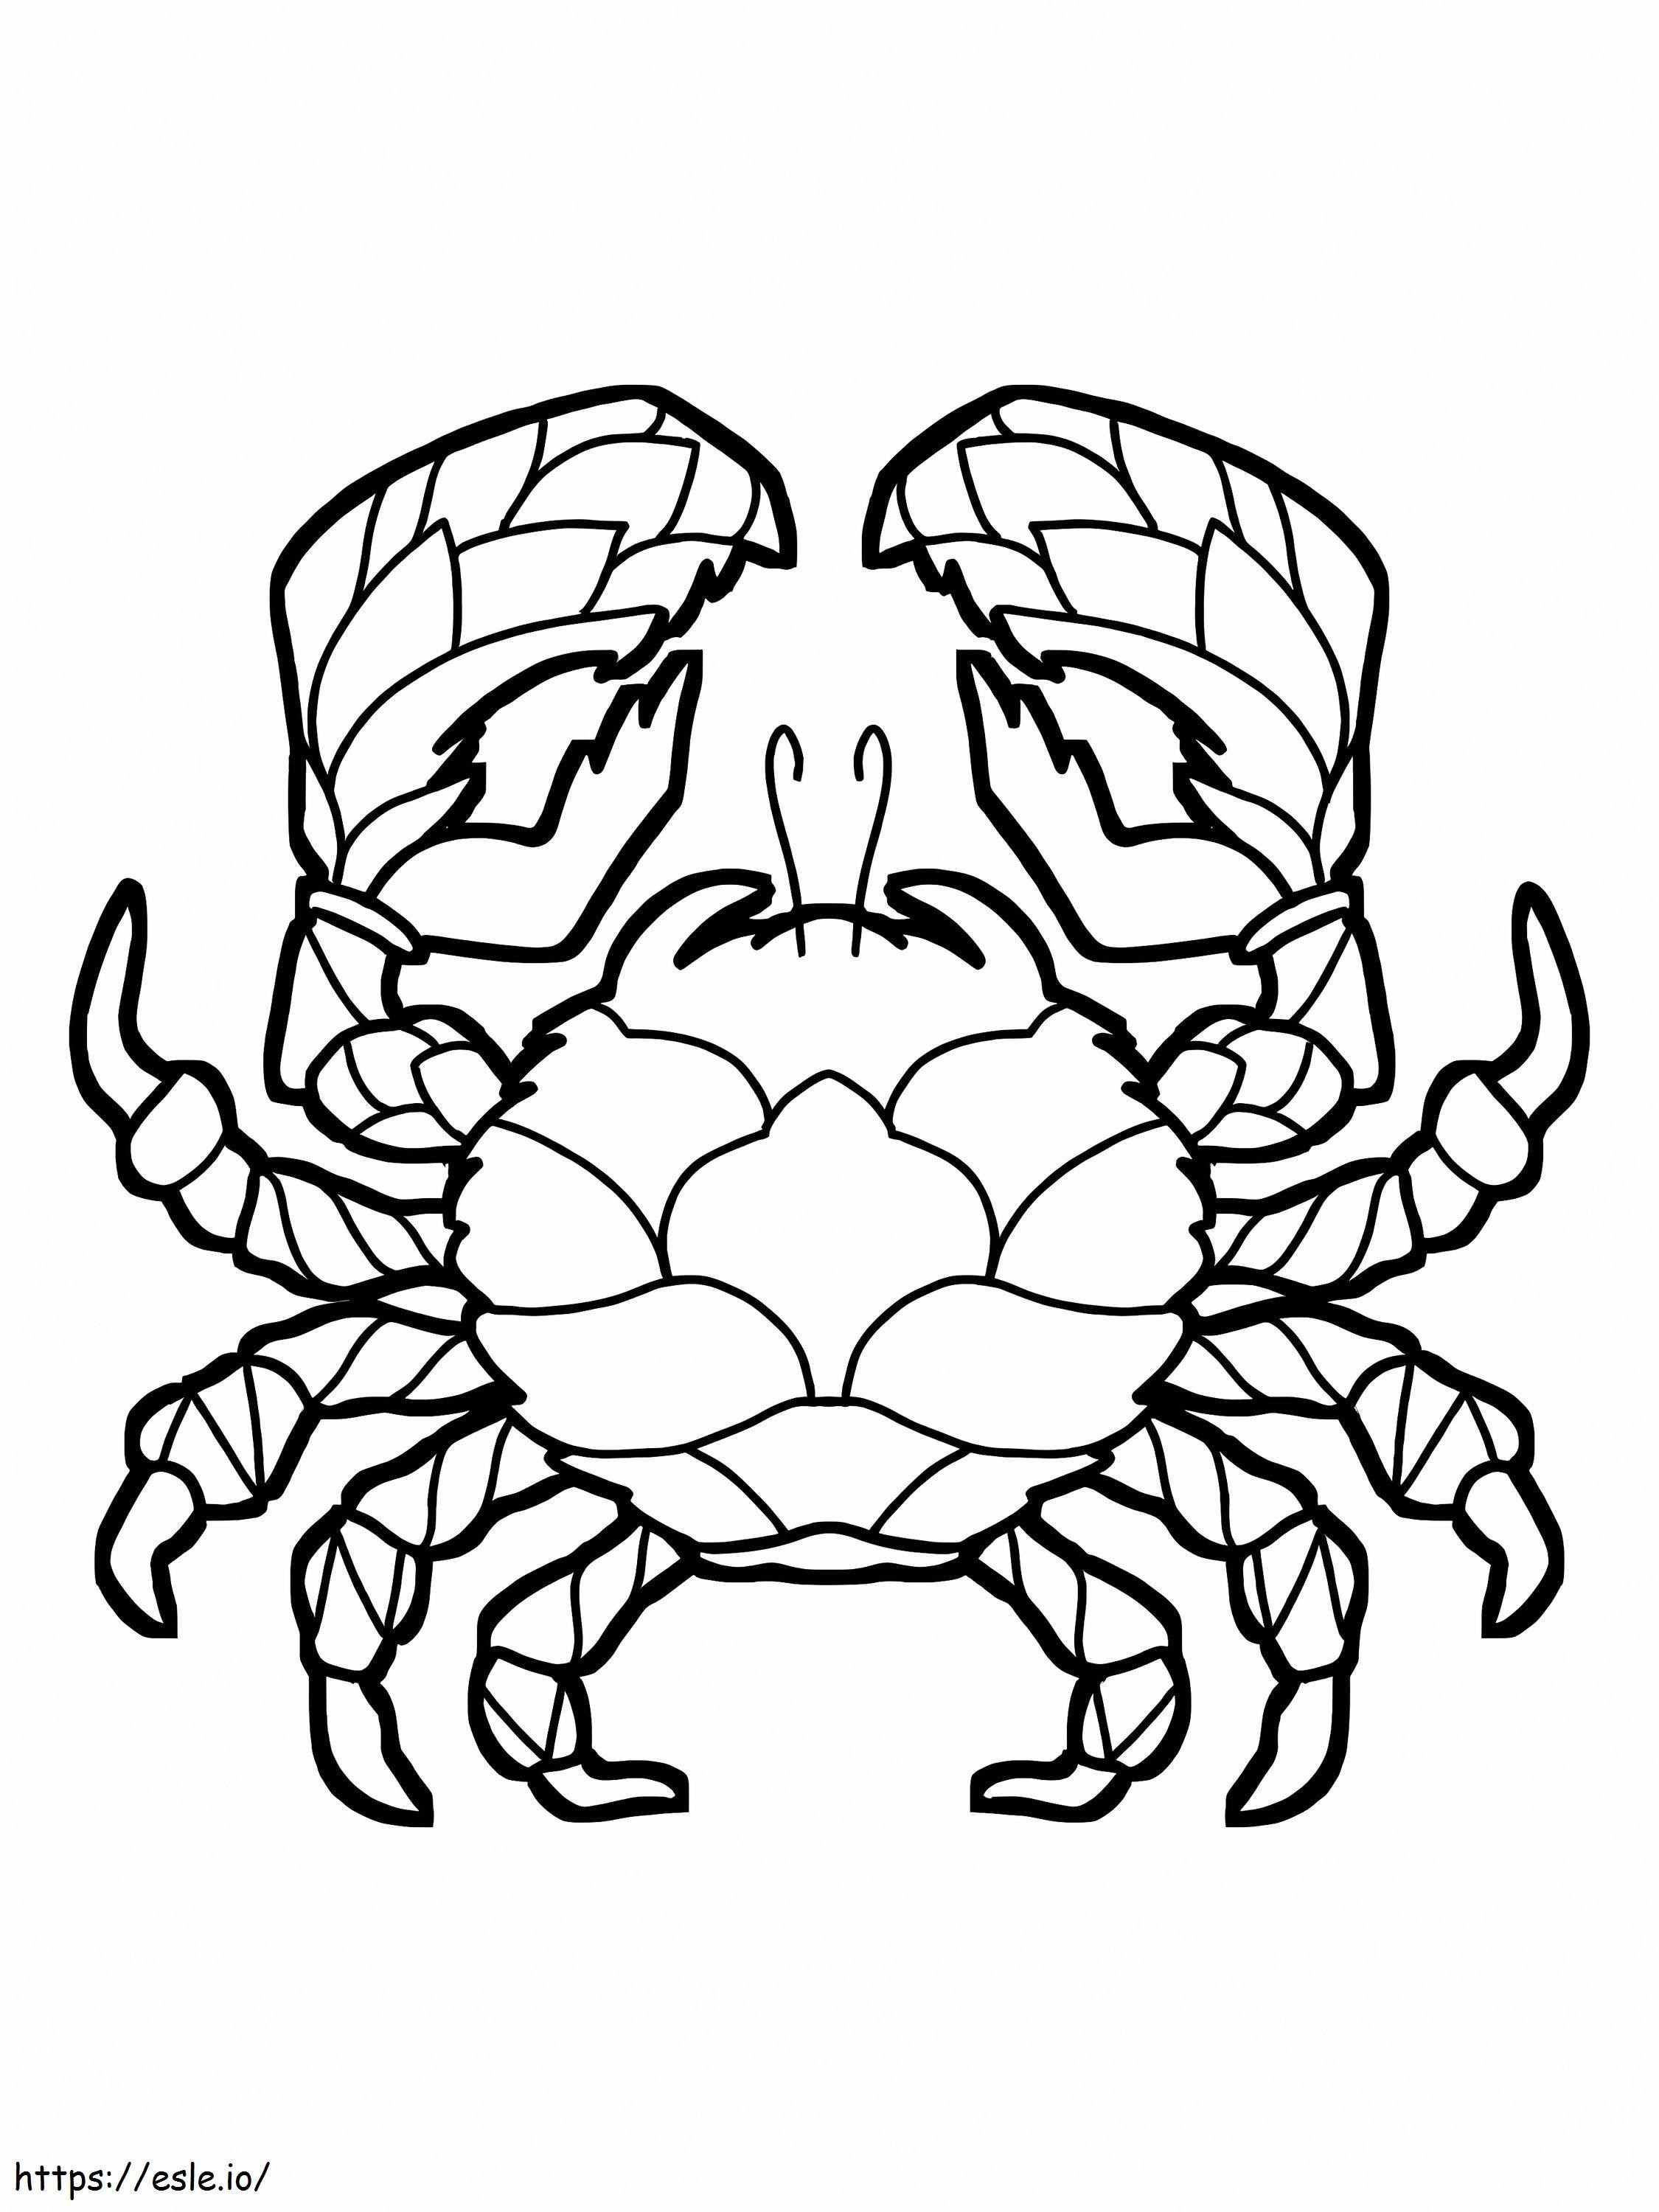 Big Crab coloring page